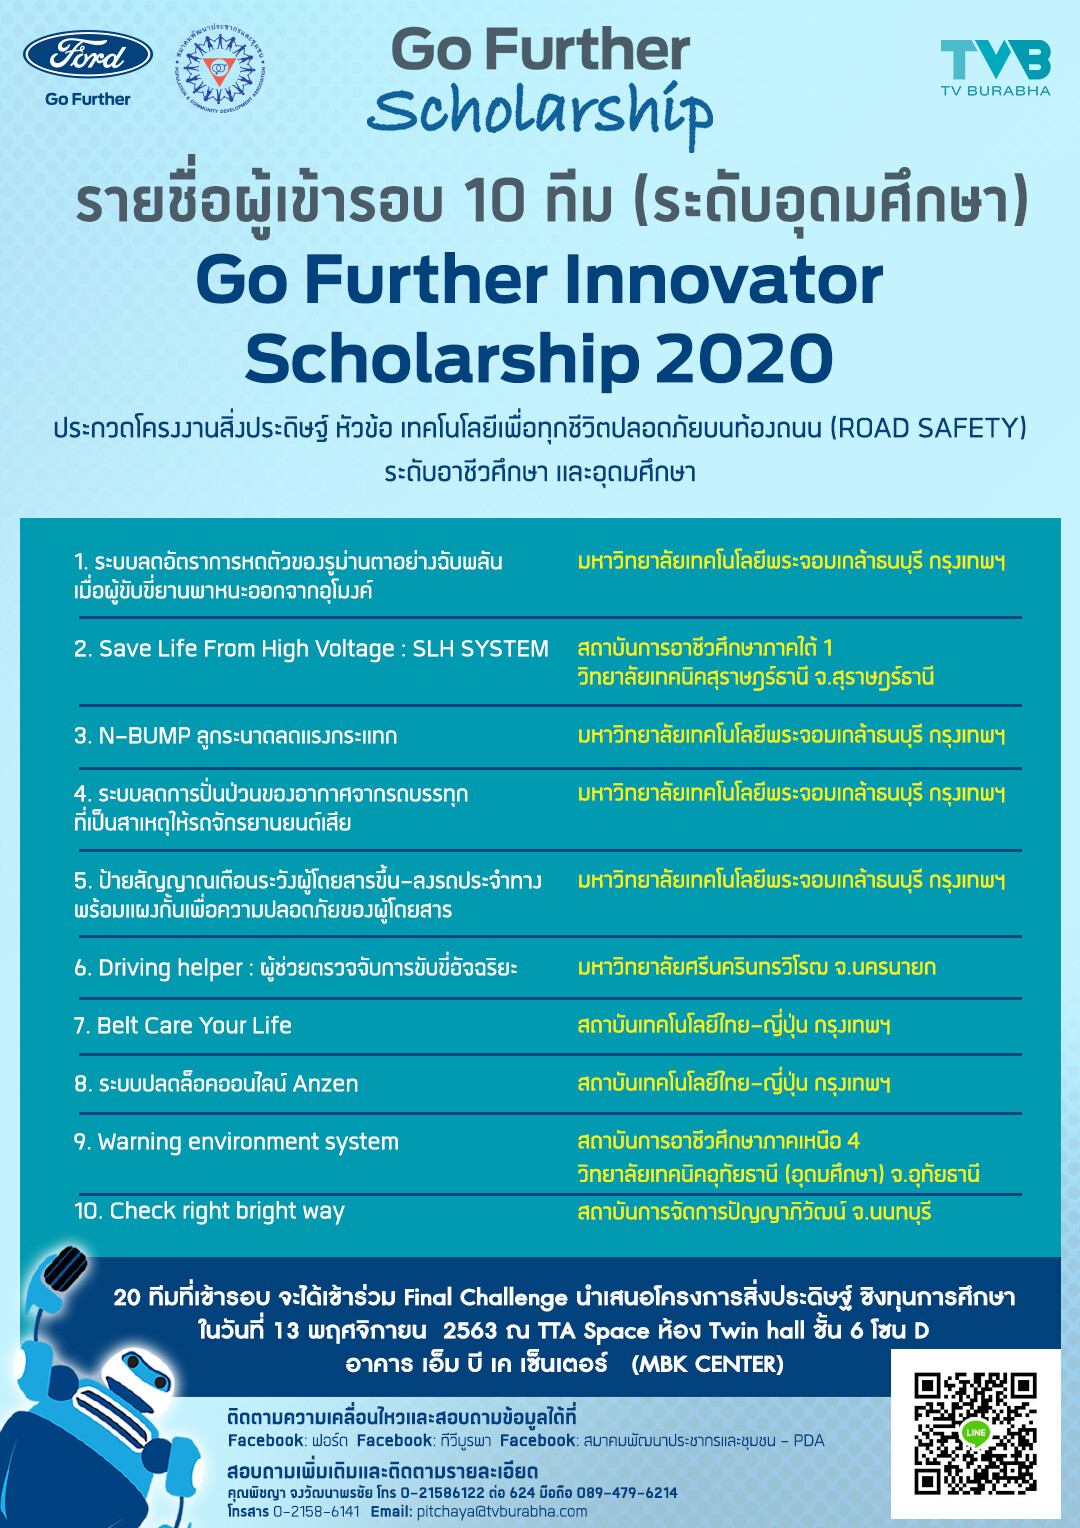 ฟอร์ดประกาศ 20 ทีมเยาวชนนักคิดเข้ารอบชิงชนะเลิศ  โครงการ 'Go Further Innovator Scholarship 2020’